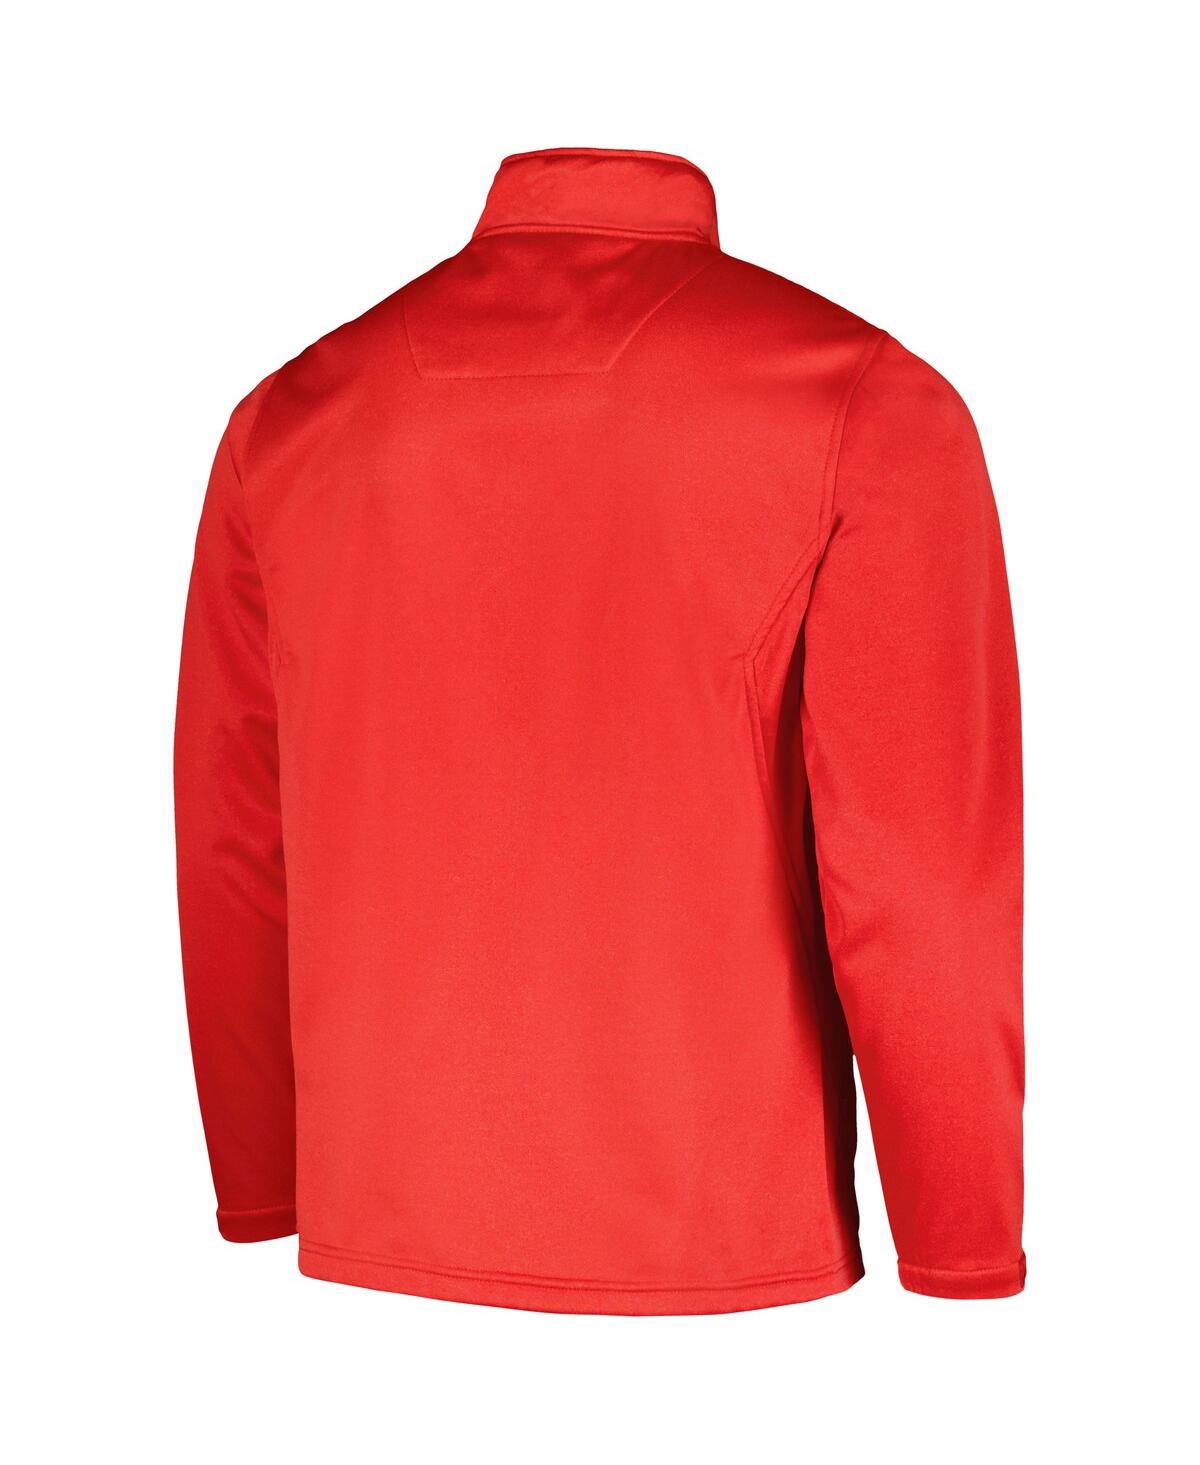 Shop Dunbrooke Men's  Heather Red Cincinnati Reds Explorer Full-zip Jacket